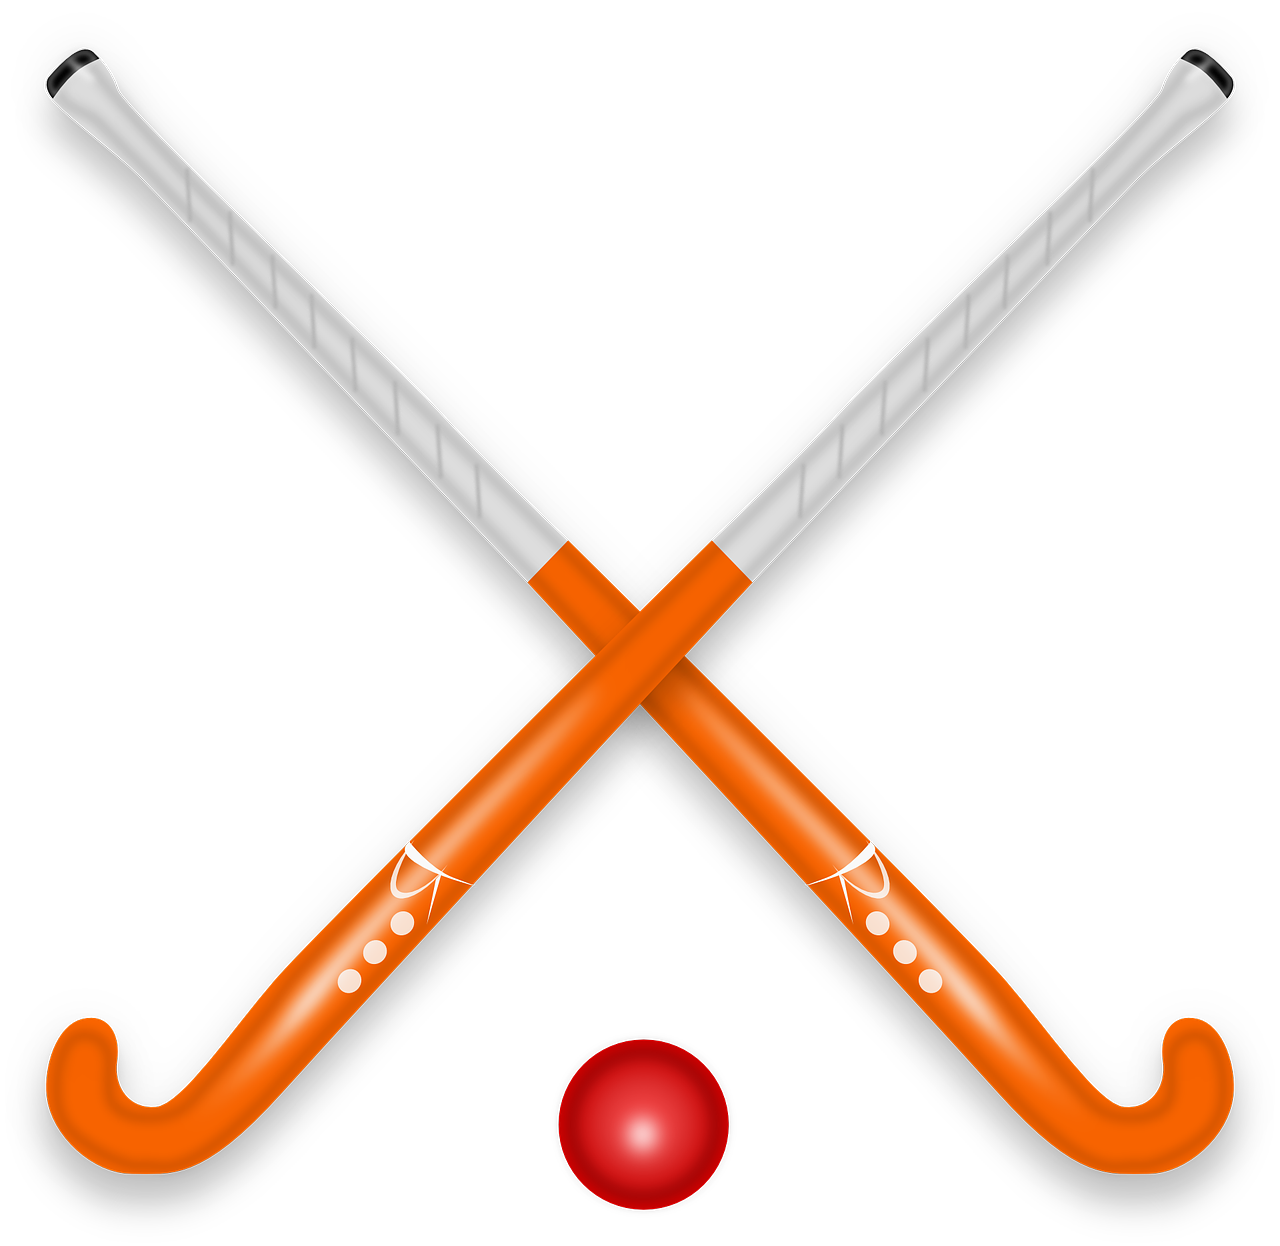 Grafik: zwei Hockeyschläger über Kreuz, darunter ein roter Hockeyball